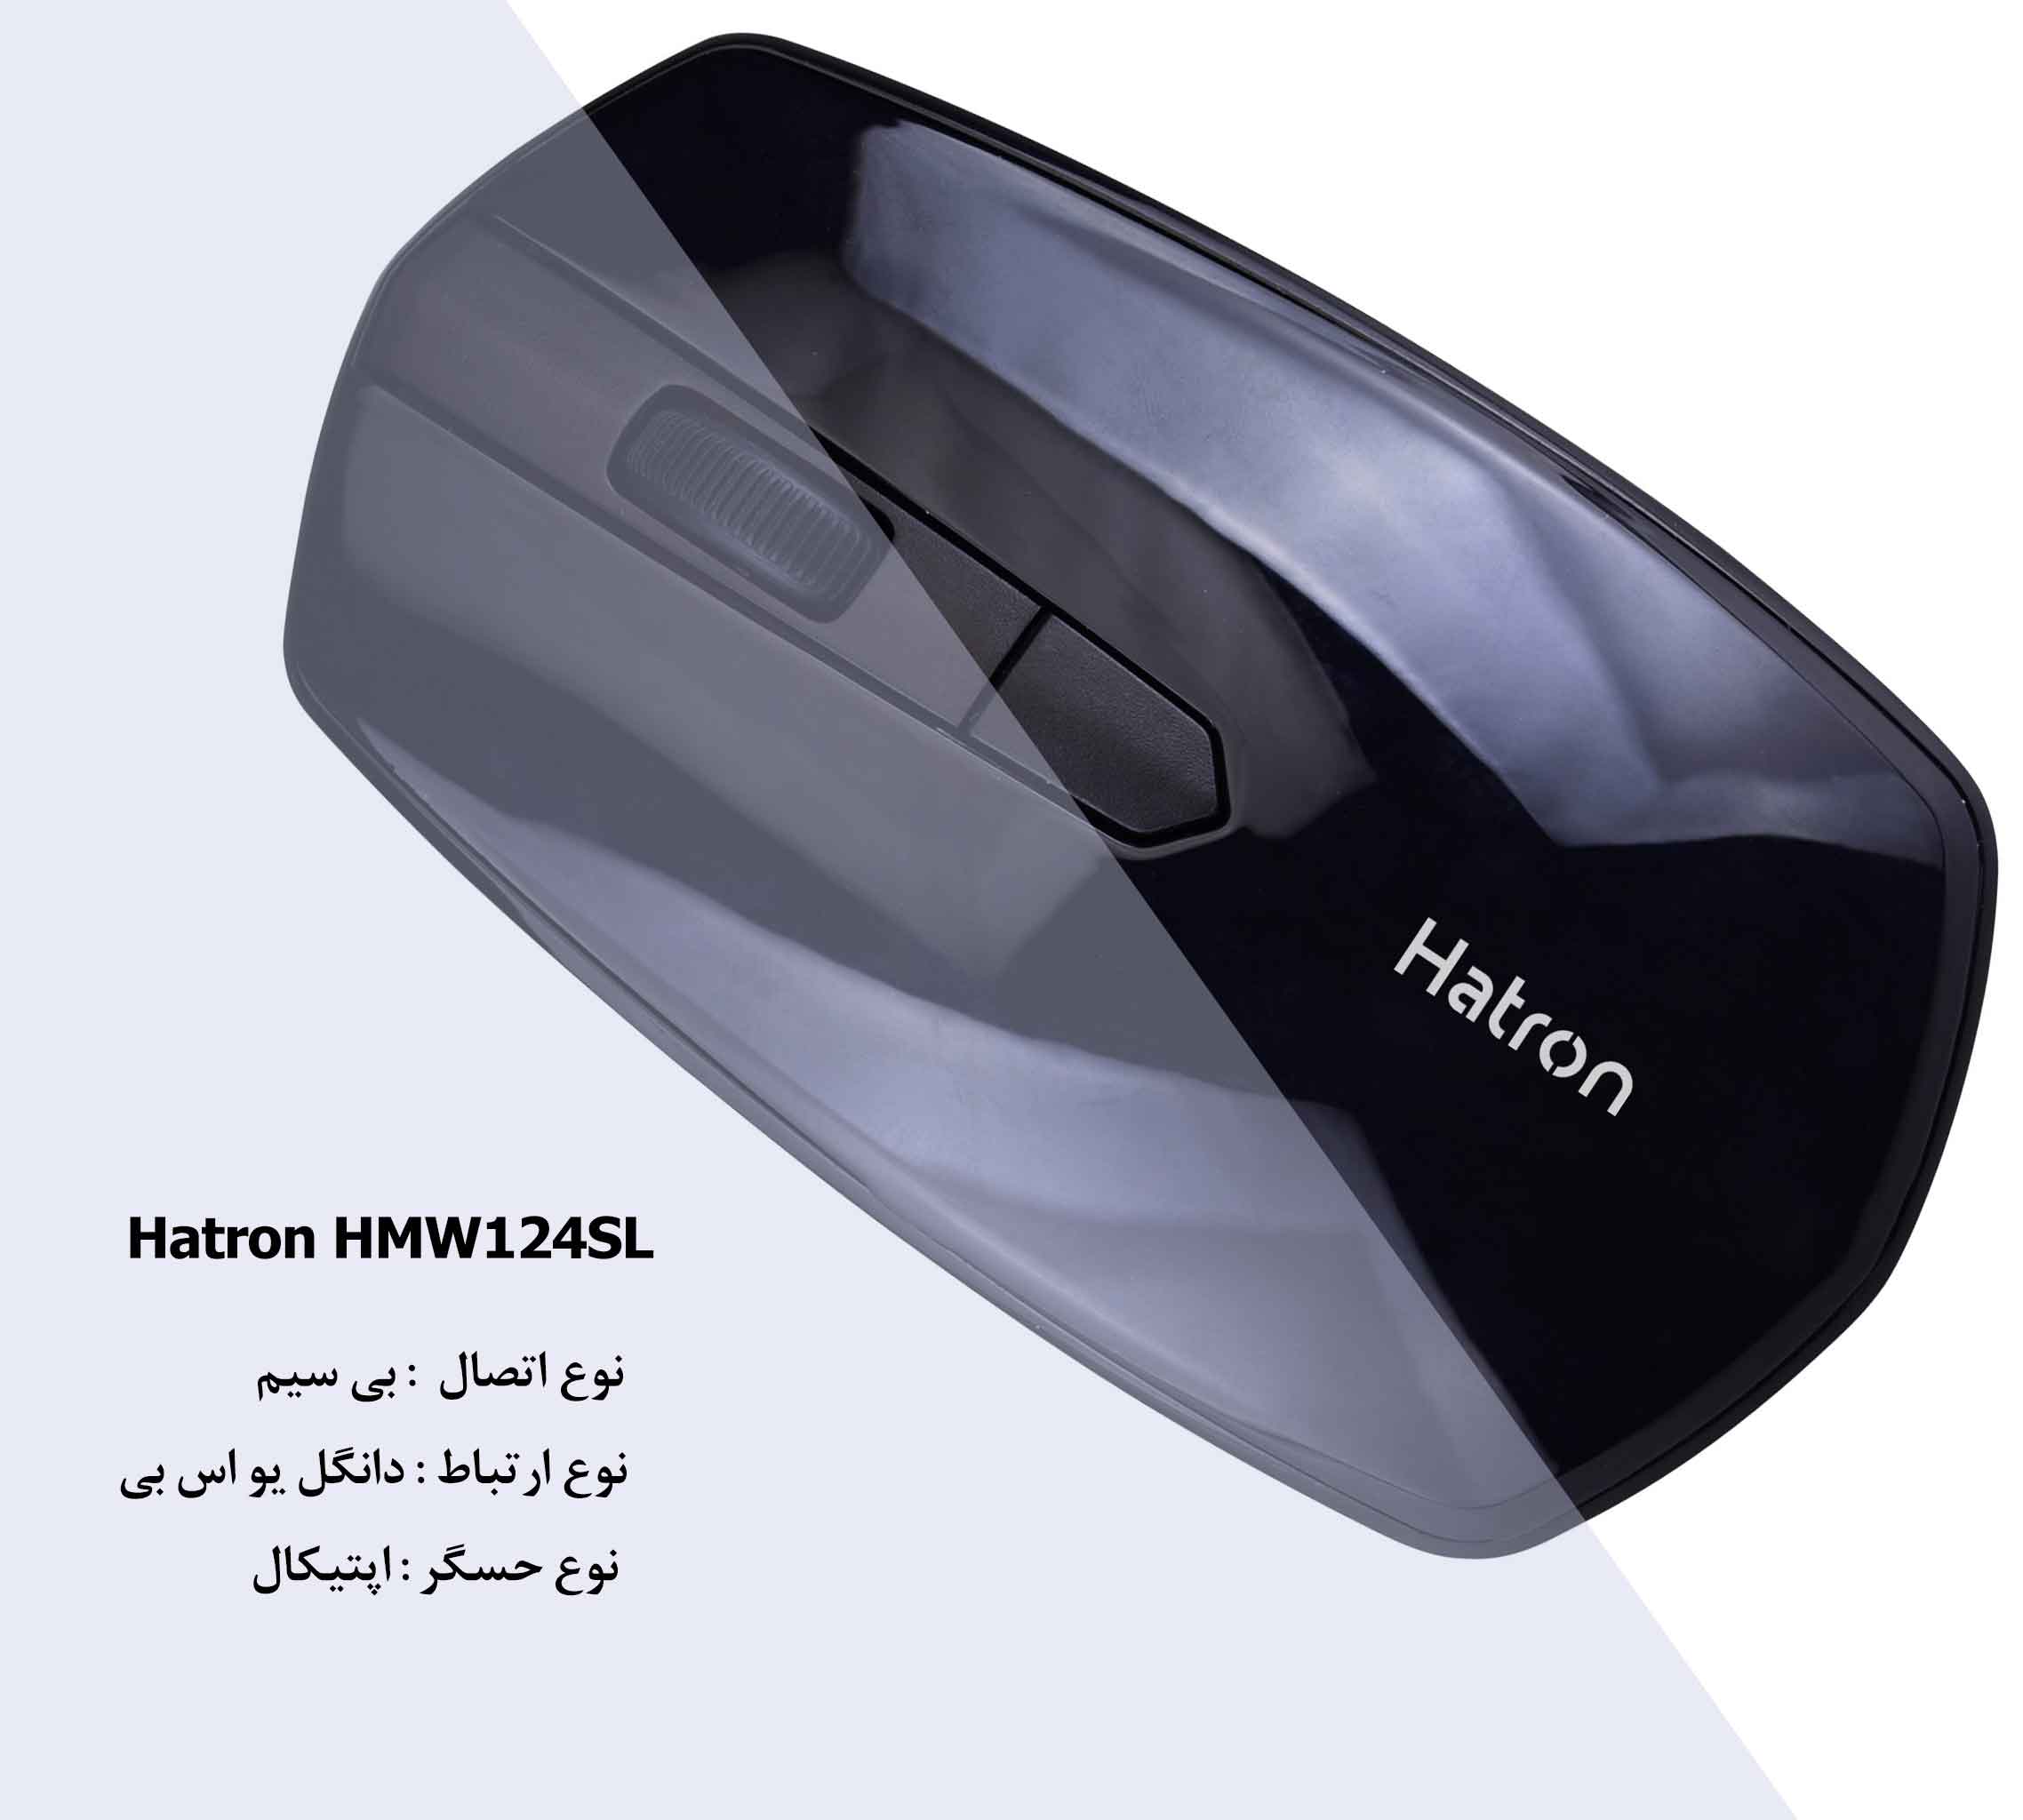 ماوس ارگونومیک هترون سایلنت Hatron HMW124SL بی سیم
